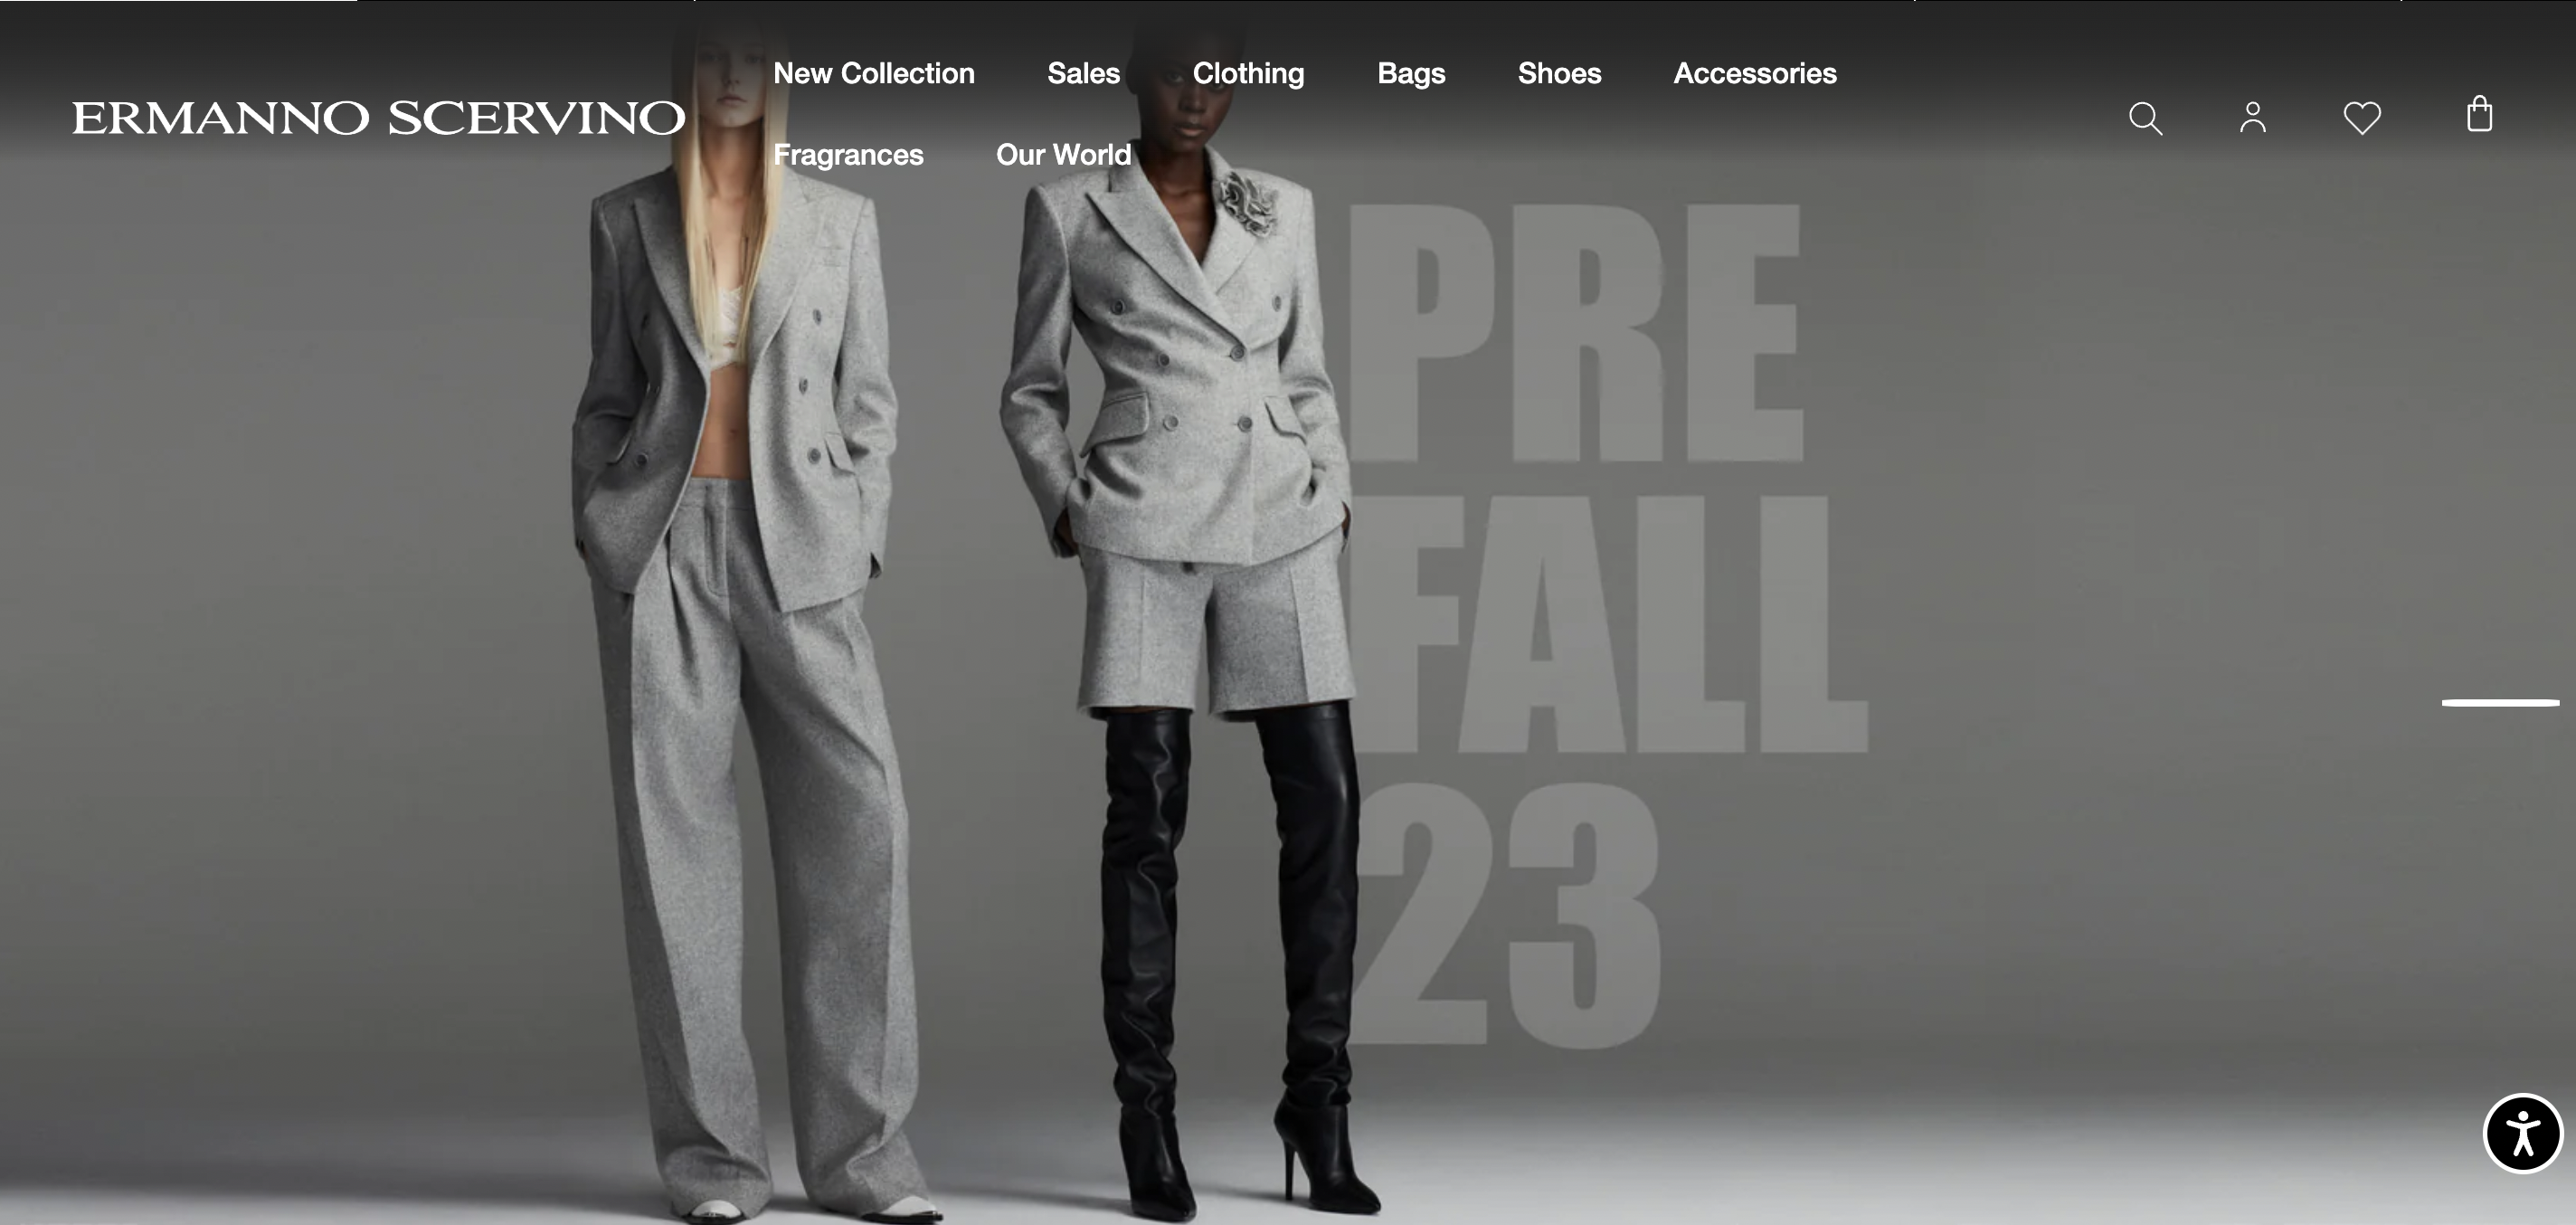 意大利高级女装品牌 Ermanno Scervino 预计2023年将实现两位数增长